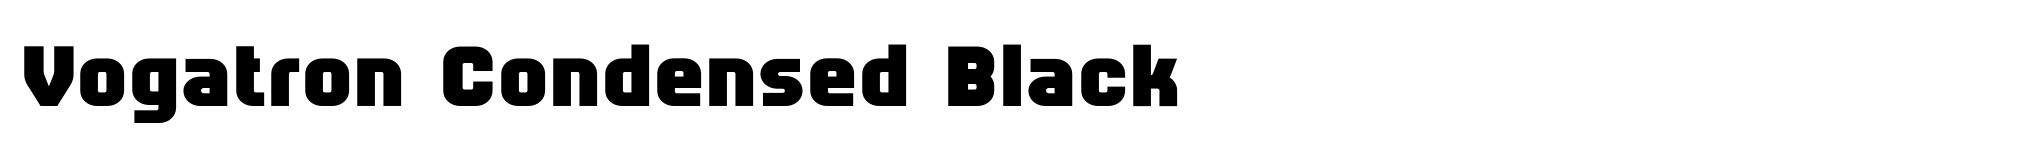 Vogatron Condensed Black image